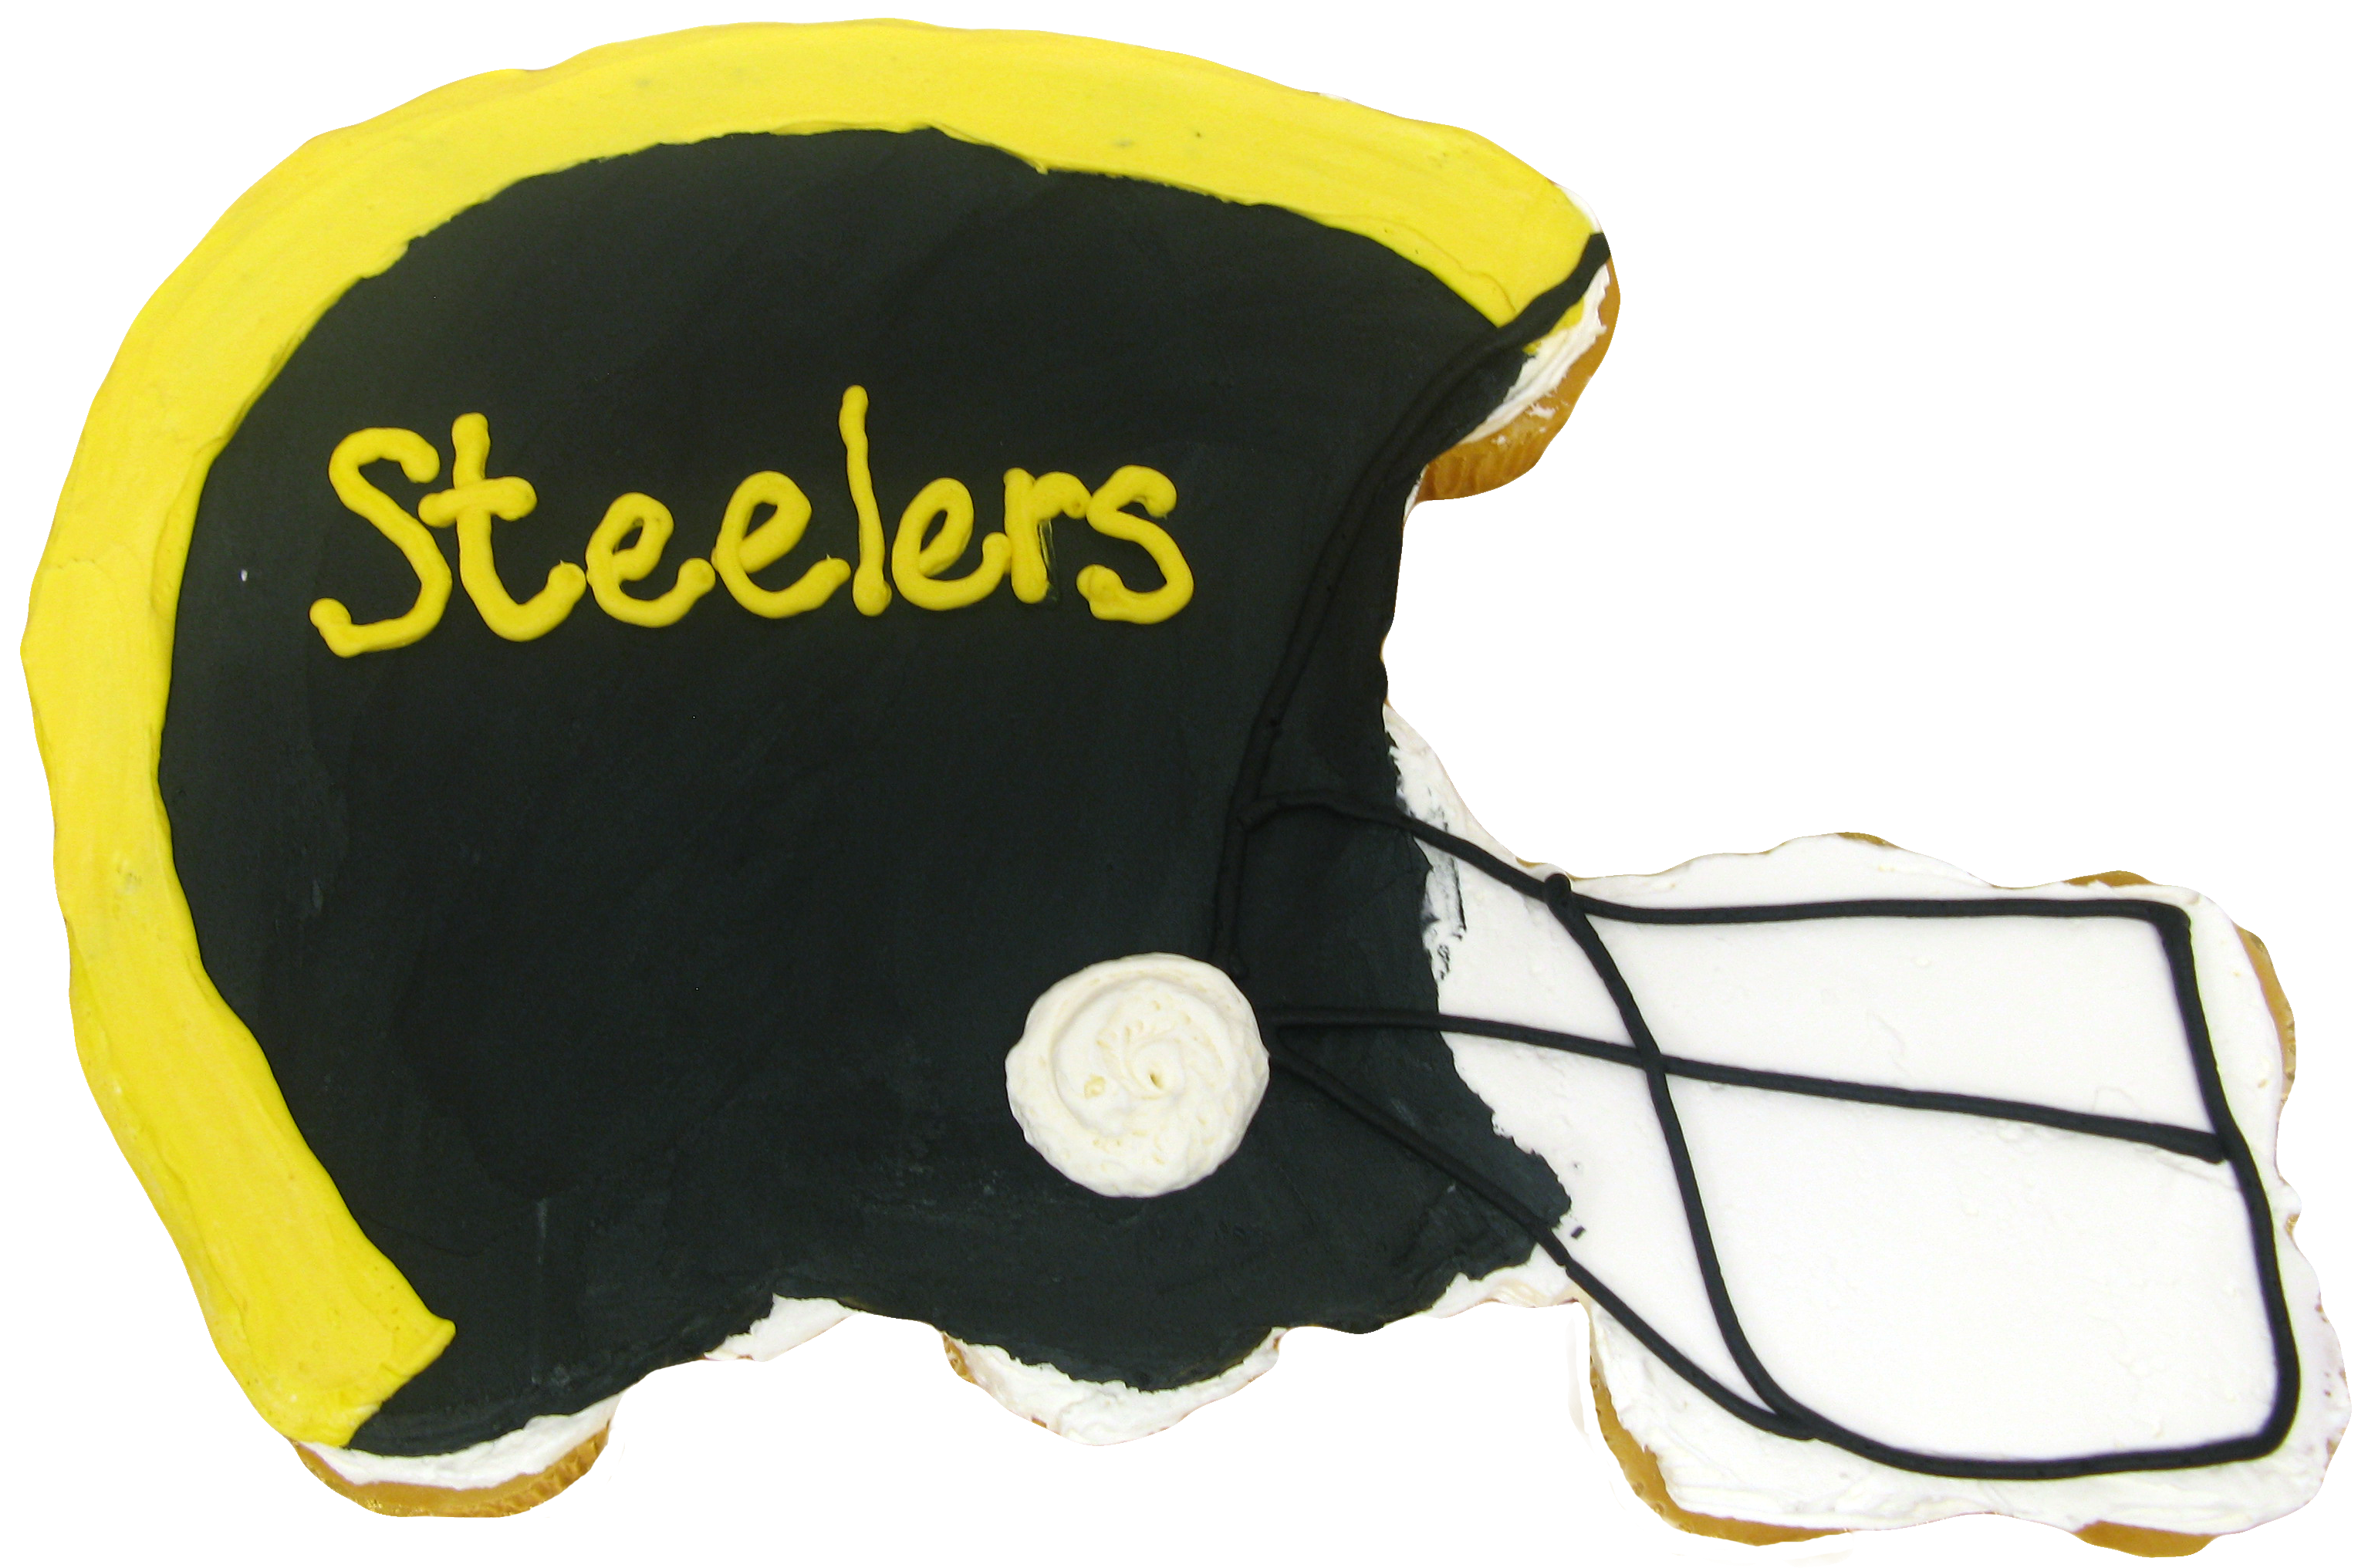 Pittsburgh Steelers Football Helmet Shaped Pantastic Cake Pan